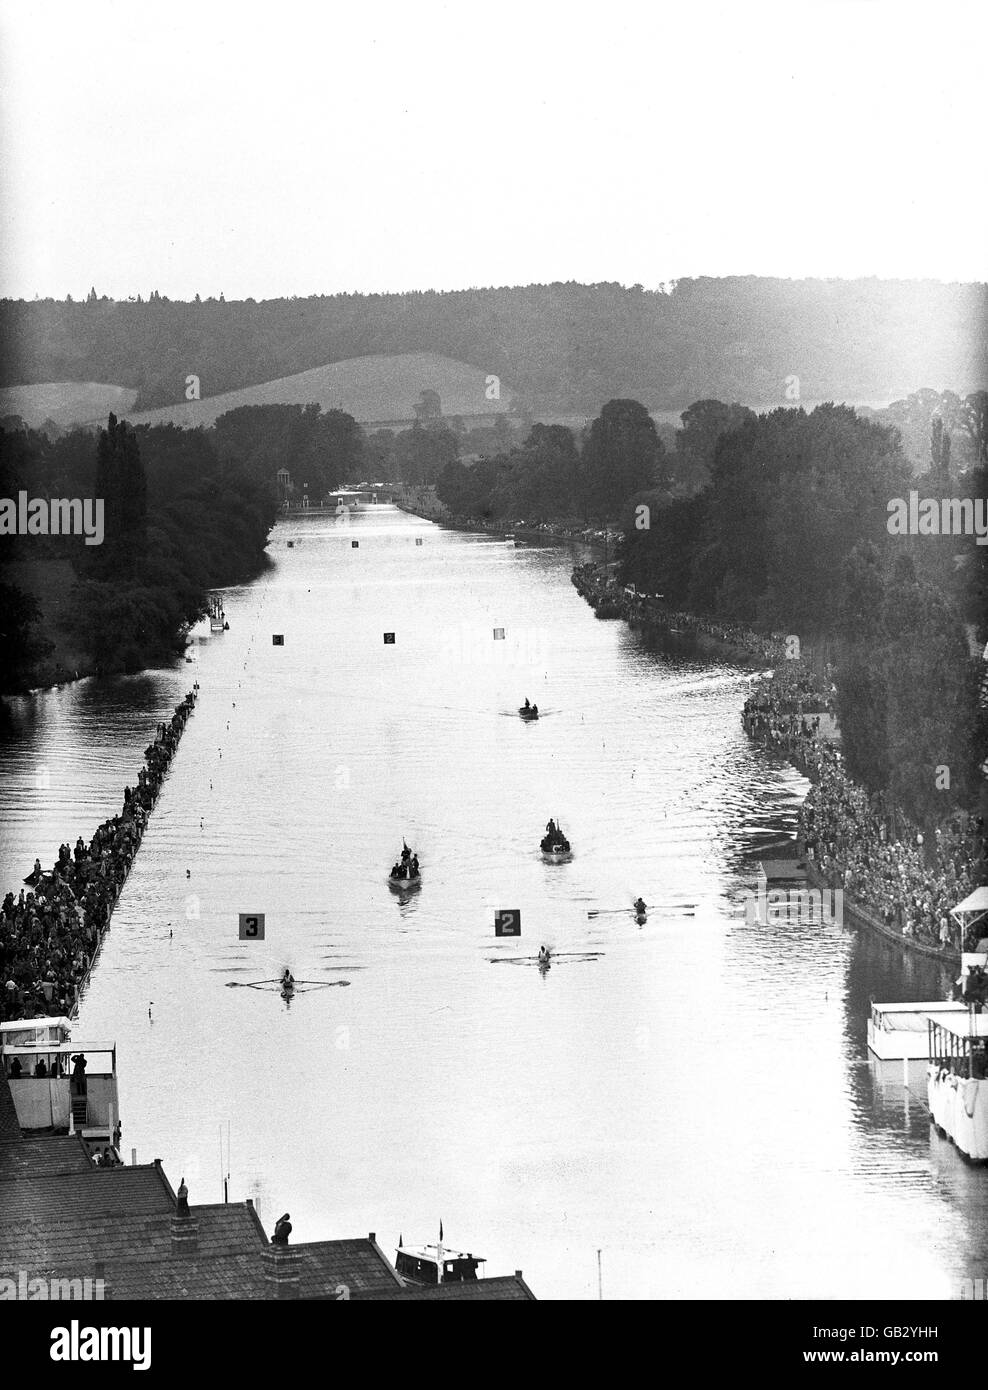 Rudern - Olympische Spiele In London. Allgemeiner Blick auf die Themse bei Henley, Veranstaltungsort für alle Ruderveranstaltungen Stockfoto